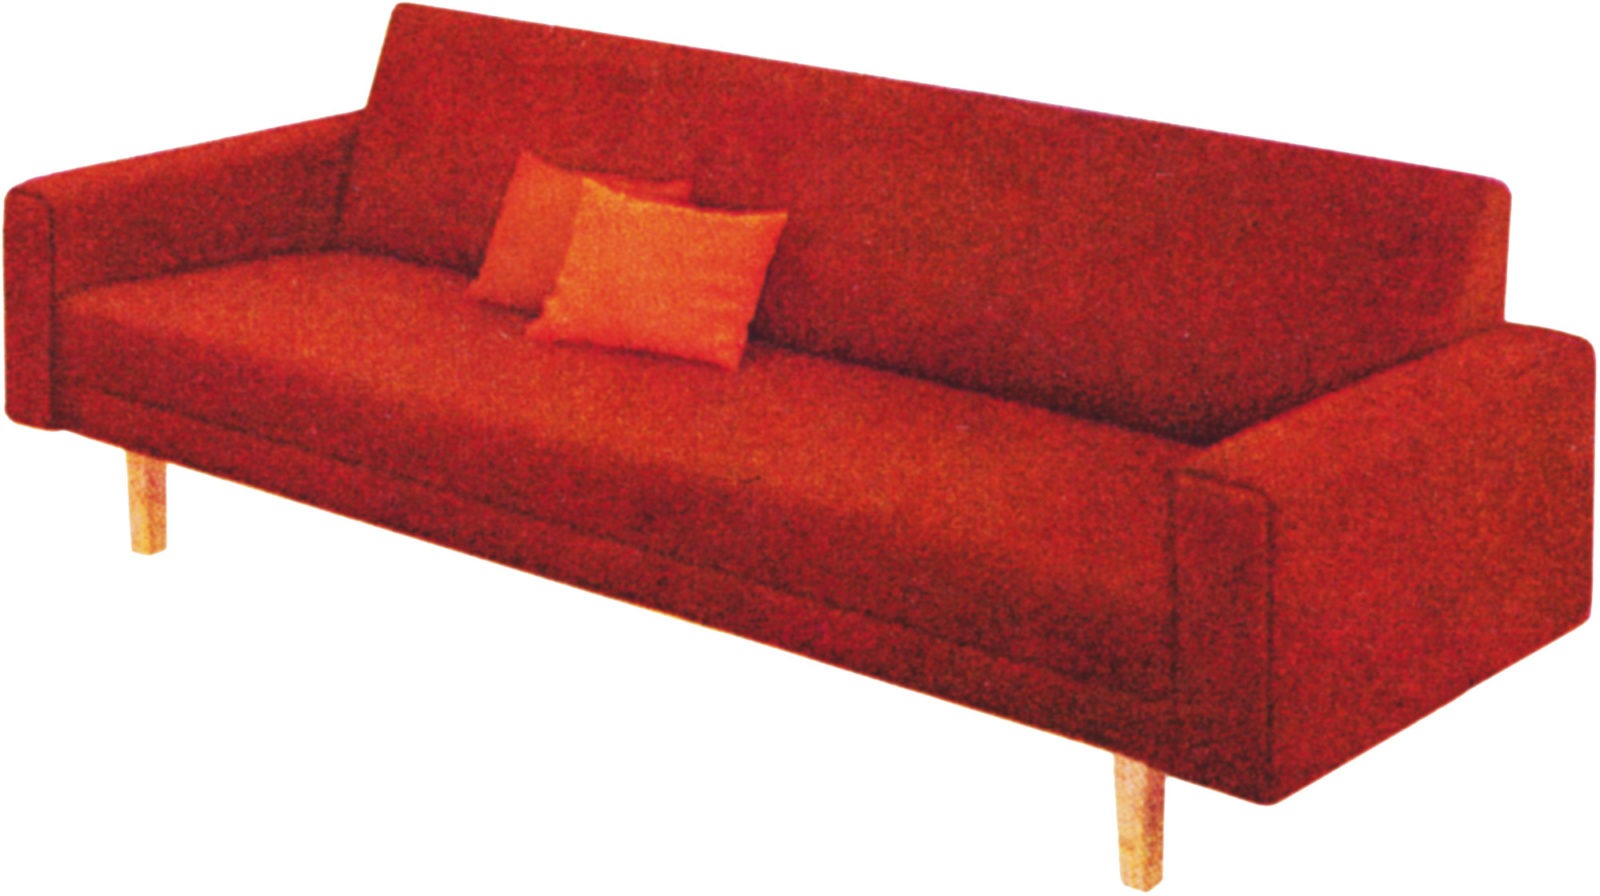 GRÅBO sofa 1964.